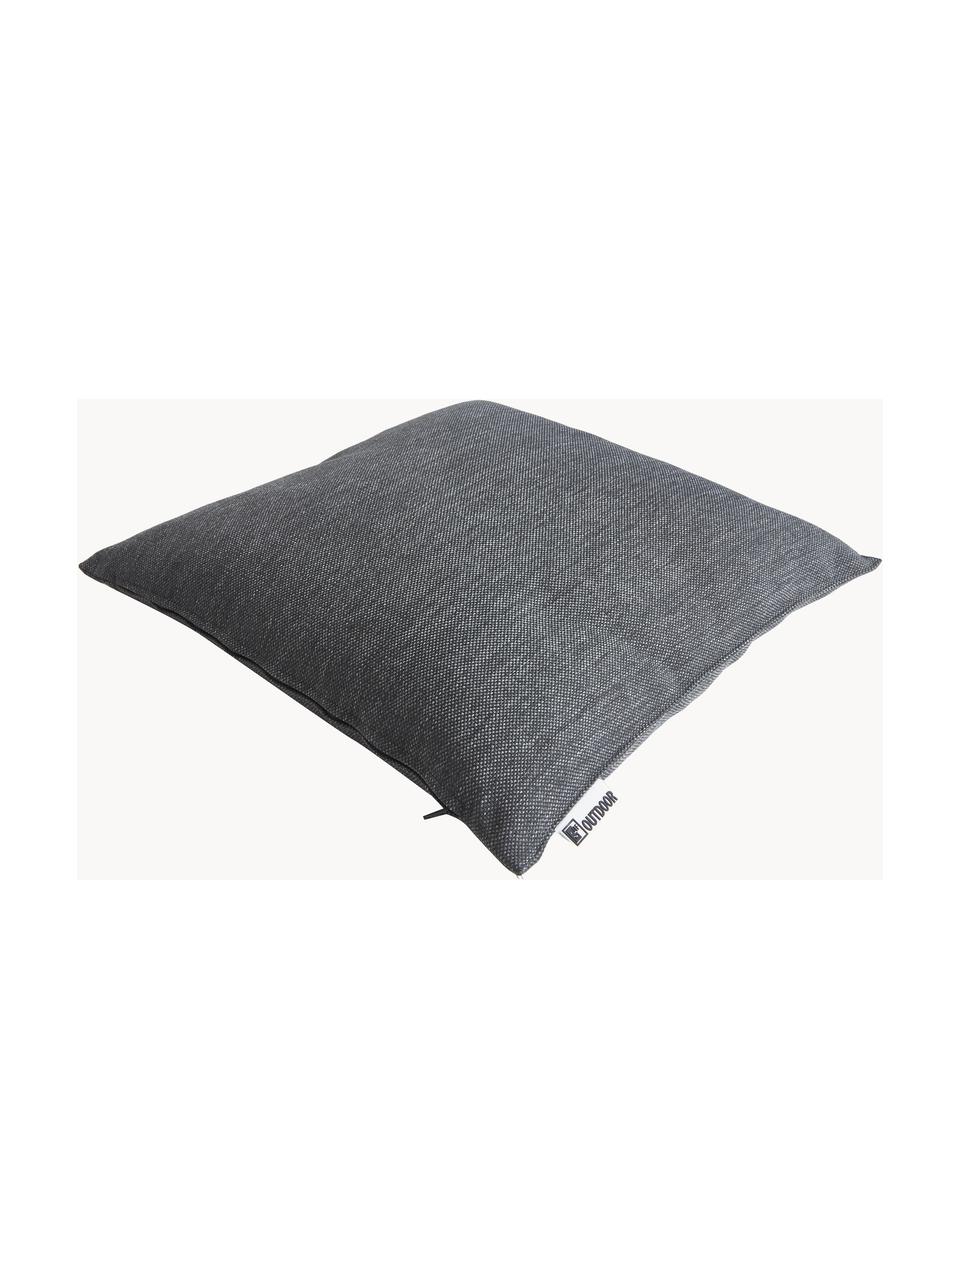 Zewnętrzna poduszka Olef, 100% bawełna, Ciemny szary, S 45 x D 45 cm